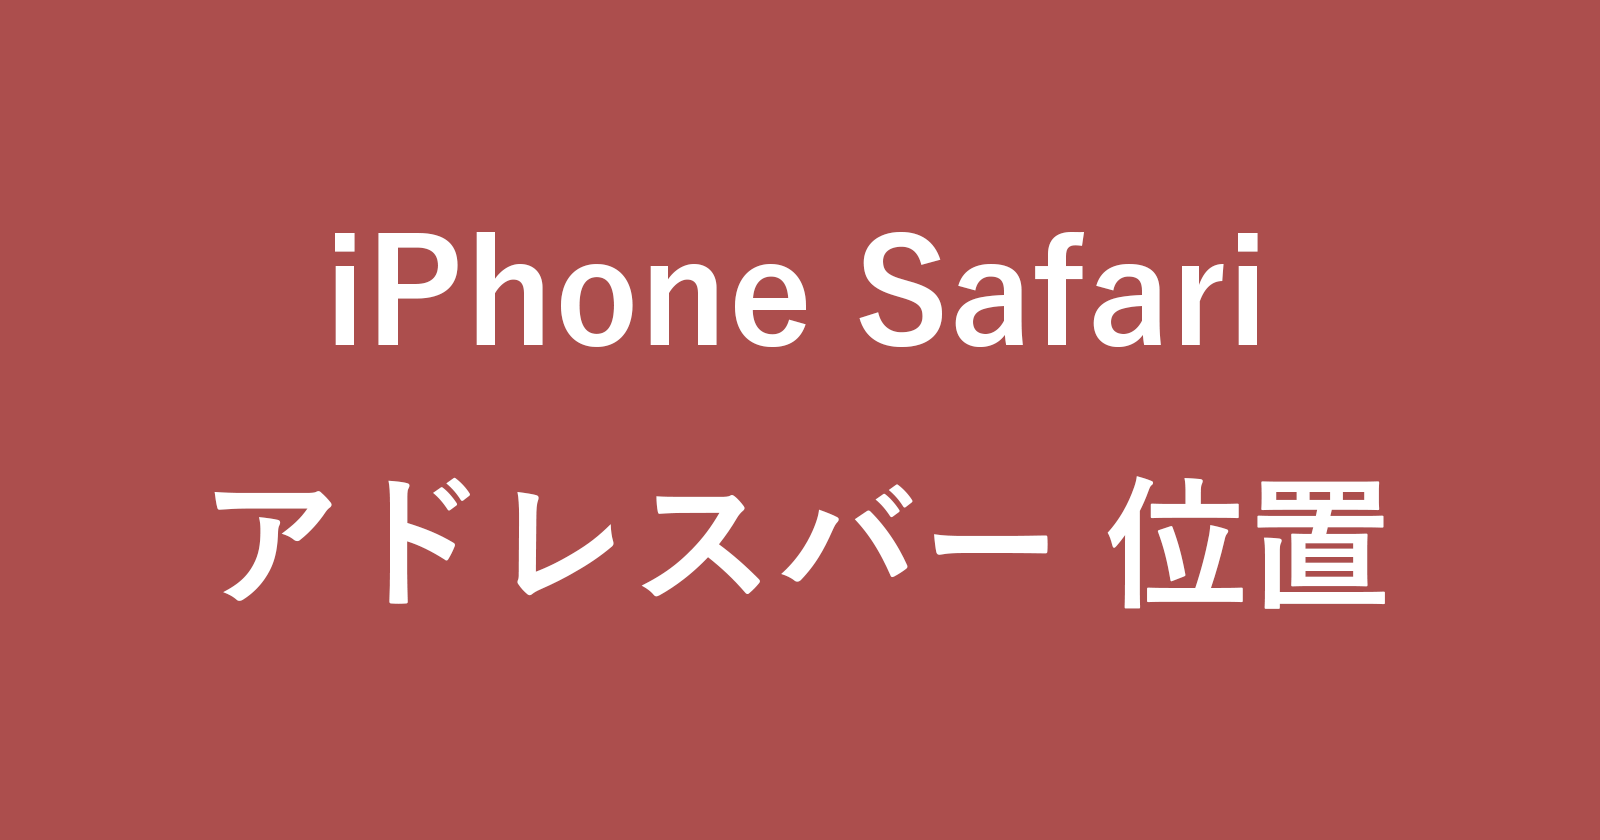 iphone safari address bar